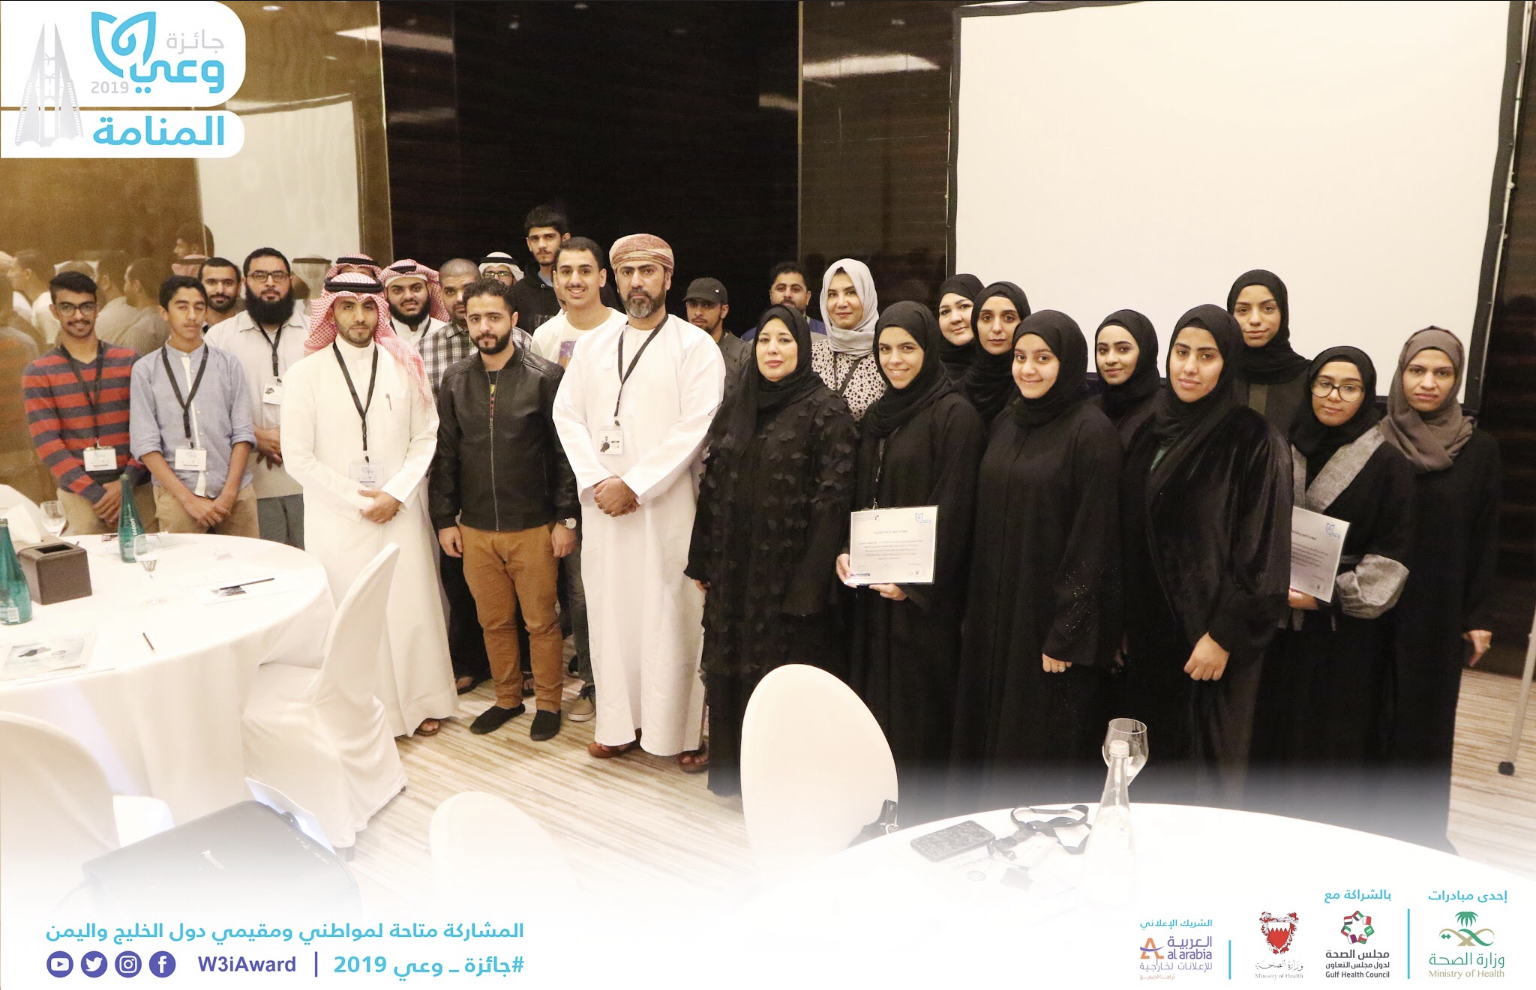 مملكة البحرين تستضيف 4 ورش تطويرية متخصصةلجائزة "وعي" الصحية .. بهدف تشجيع الأفراد بدول مجلس التعاون الخليجي للإبداع بالمحتوى التوعوي في مجال الصحة ..